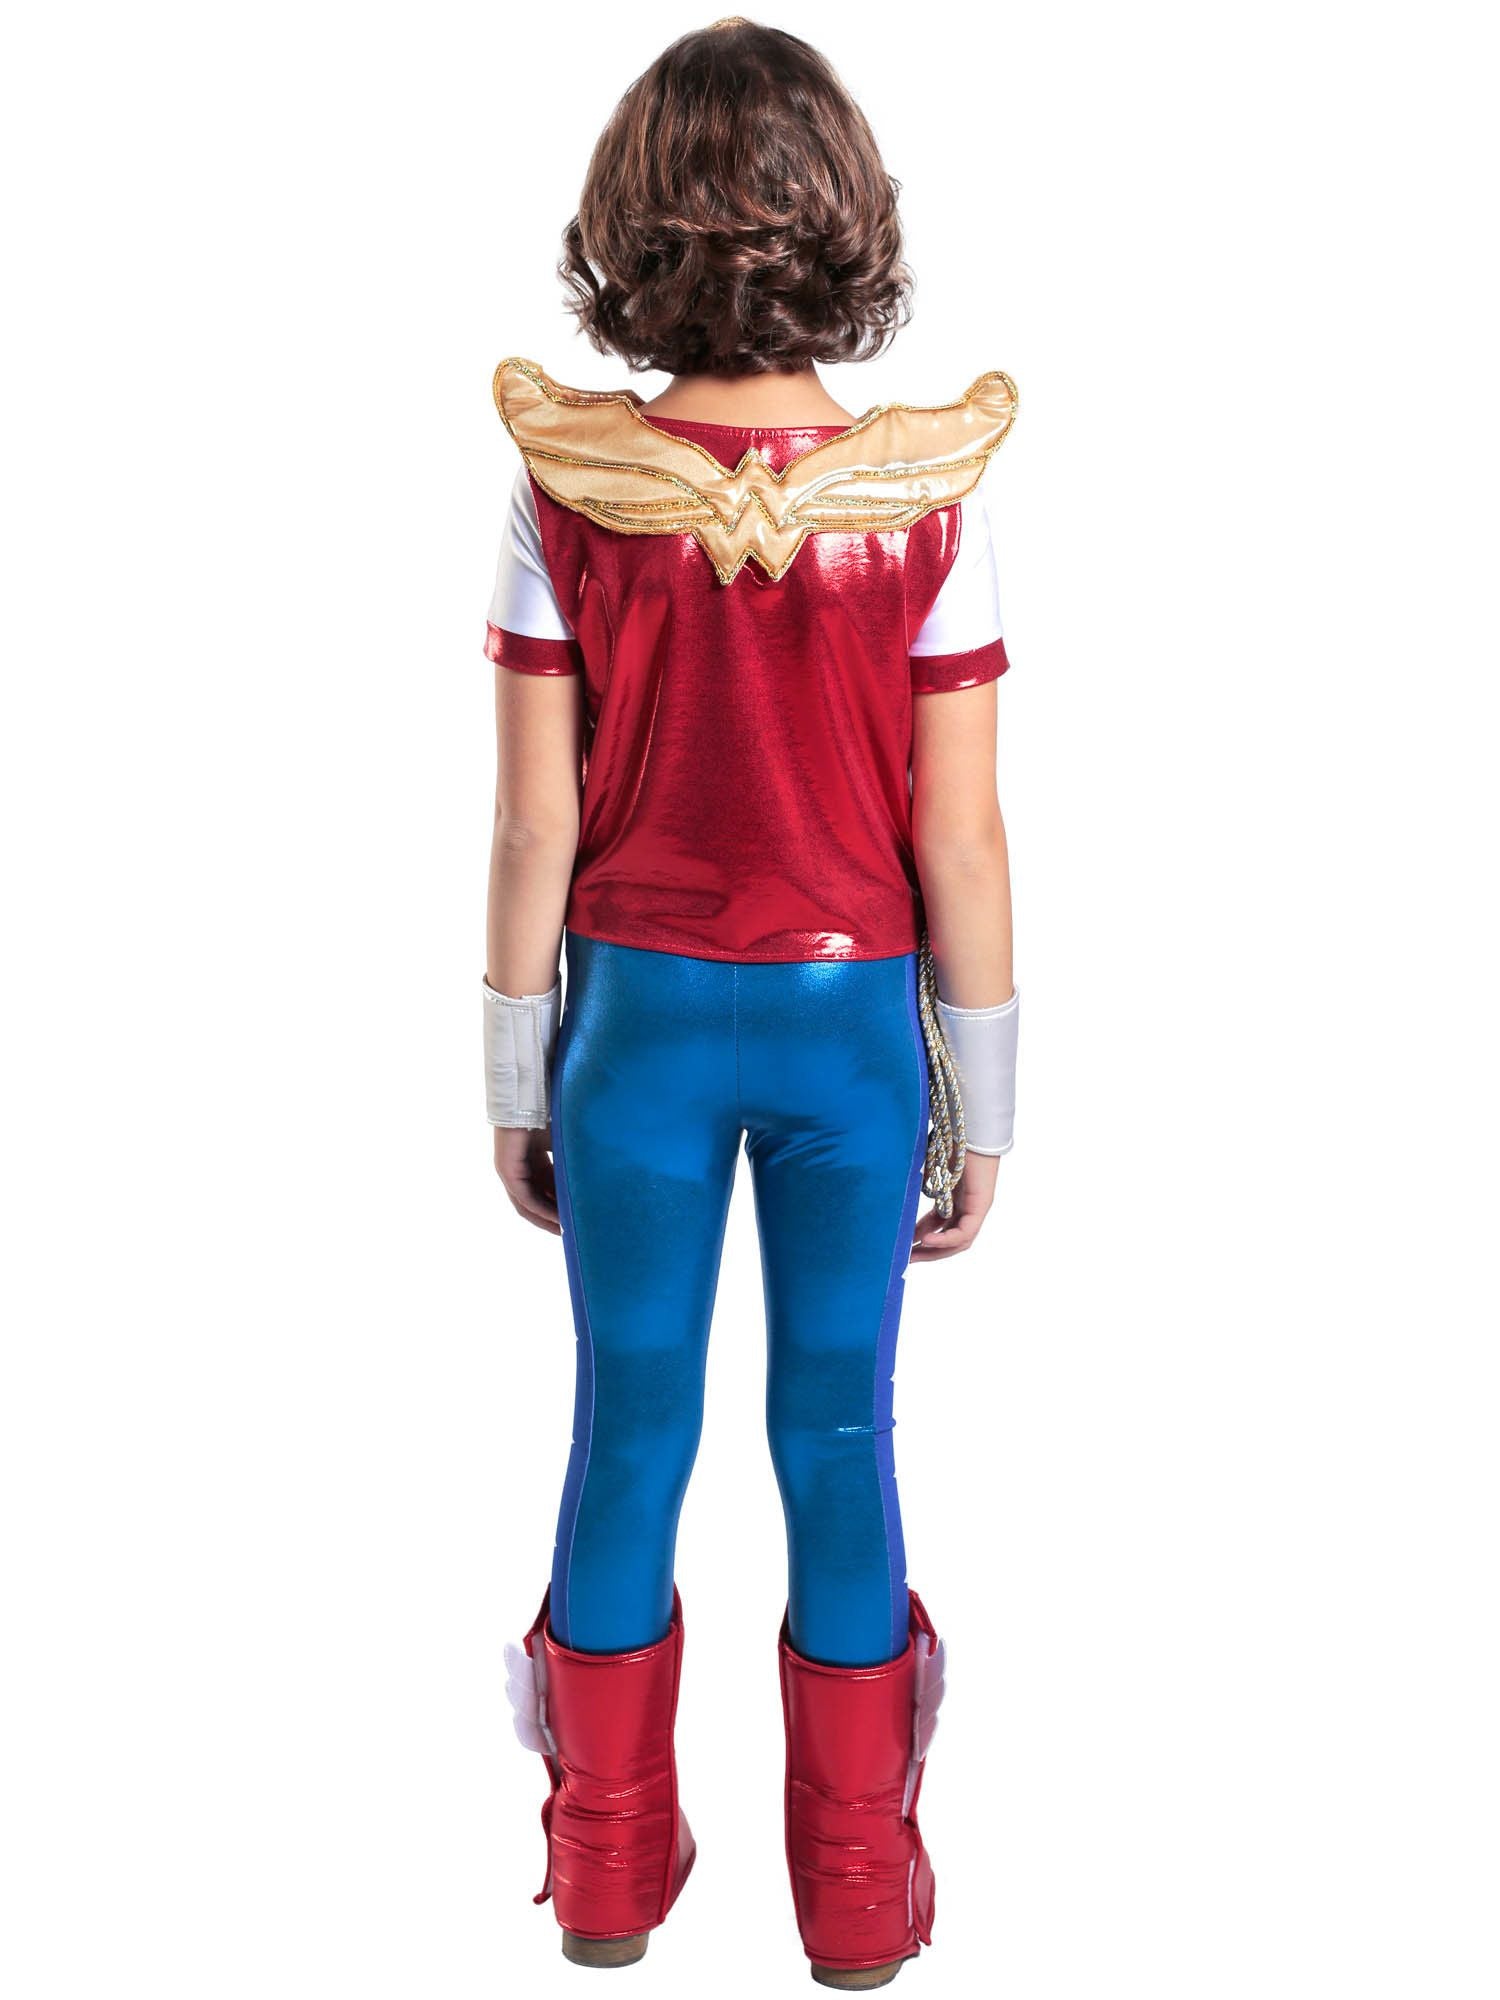 Girls' DC Superhero Girls Wonder Woman Costume - Premium - costumes.com